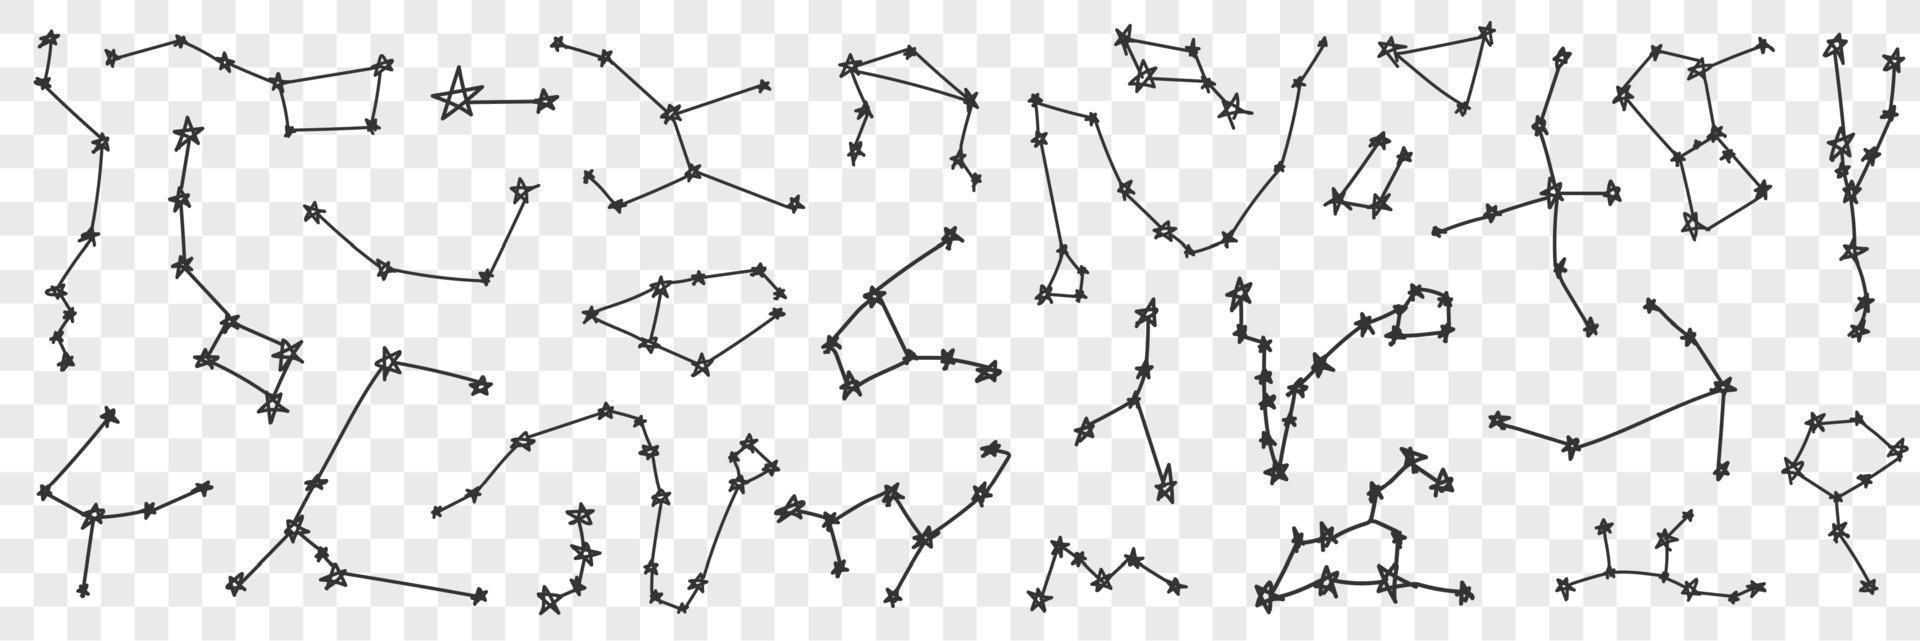 stella costellazione su cielo scarabocchio impostare. collezione di mano disegnato vario cielo stella costellazione di diverso forme luminosa splendente isolato su trasparente sfondo vettore